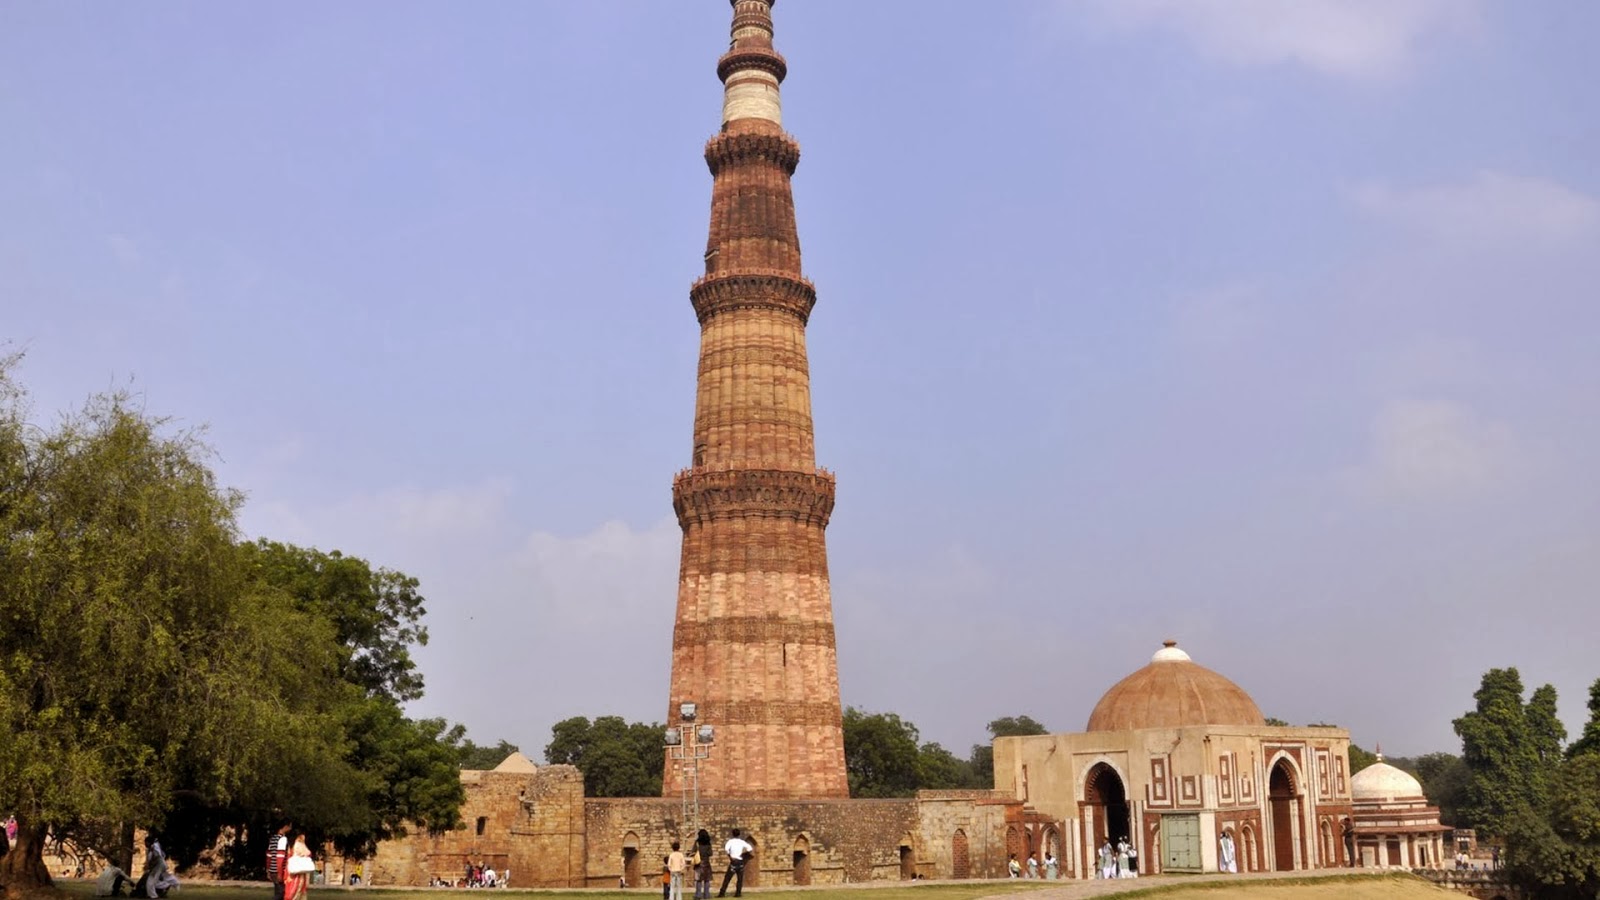 delhi wallpaper,landmark,historic site,monument,tower,national historic landmark